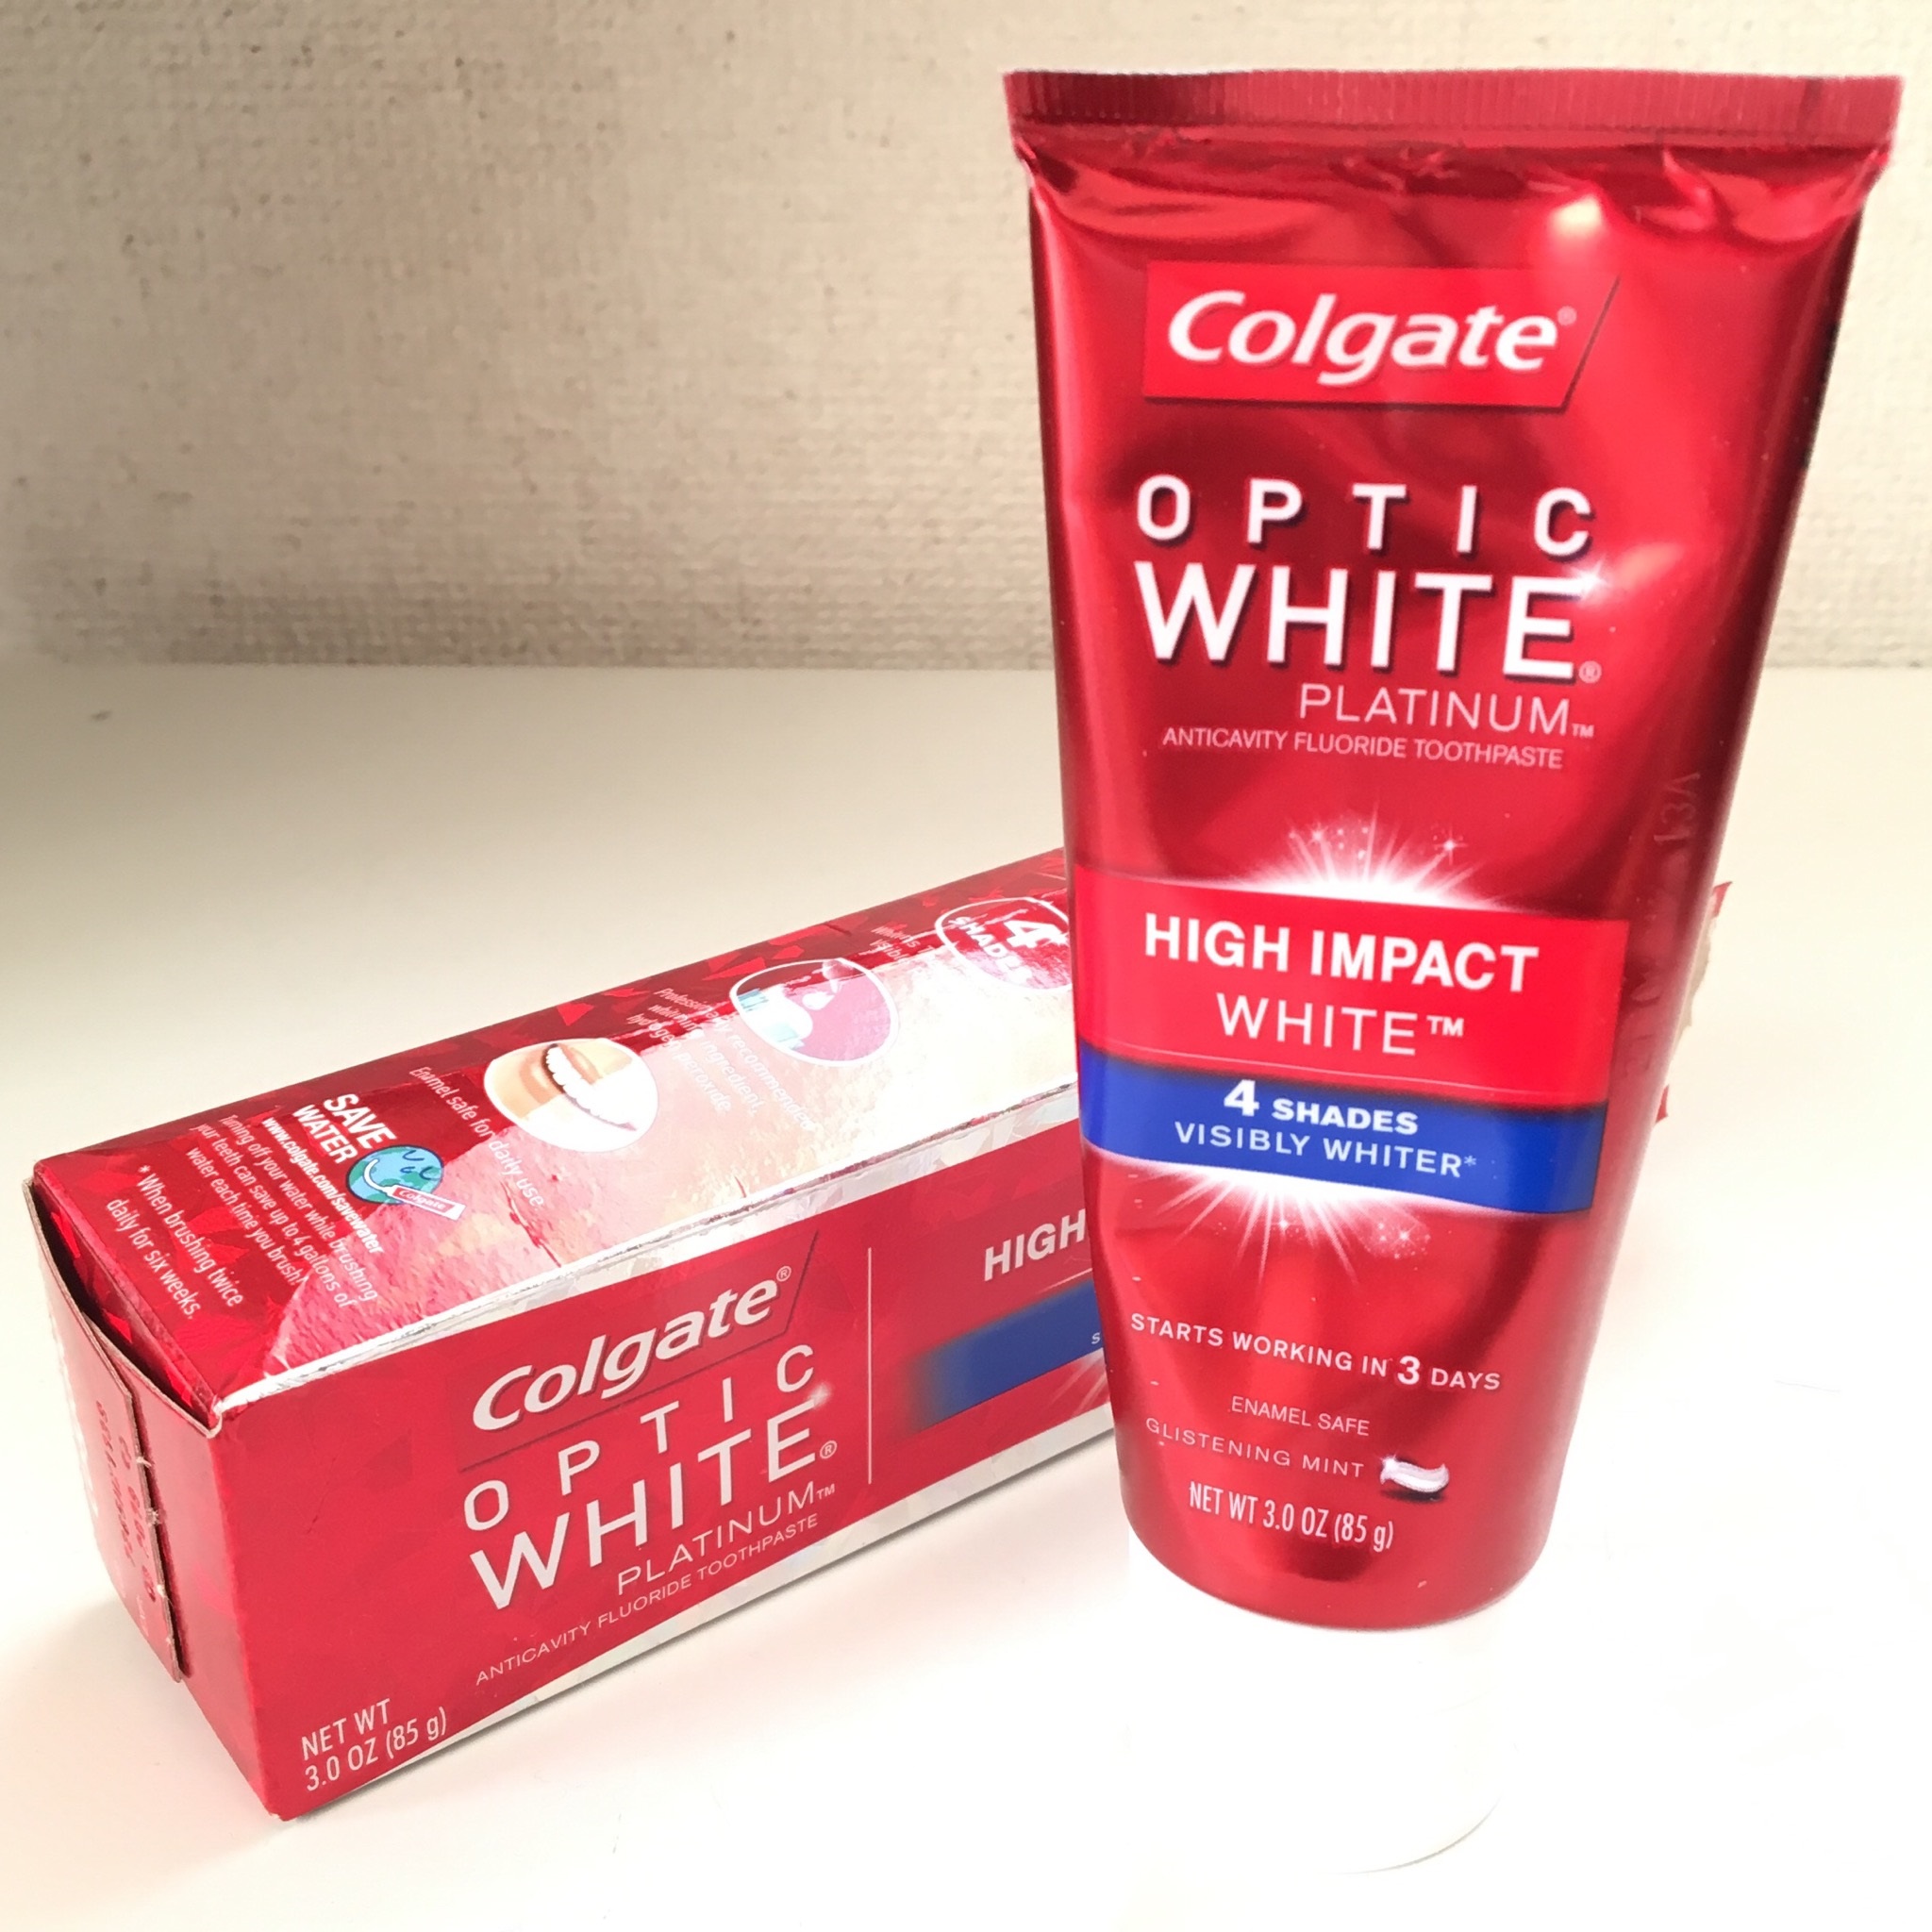 効果アリ!歯磨きで歯を白く!コルゲートの歯磨き粉 オプティックホワイト「ハイインパクト」使ってみた！